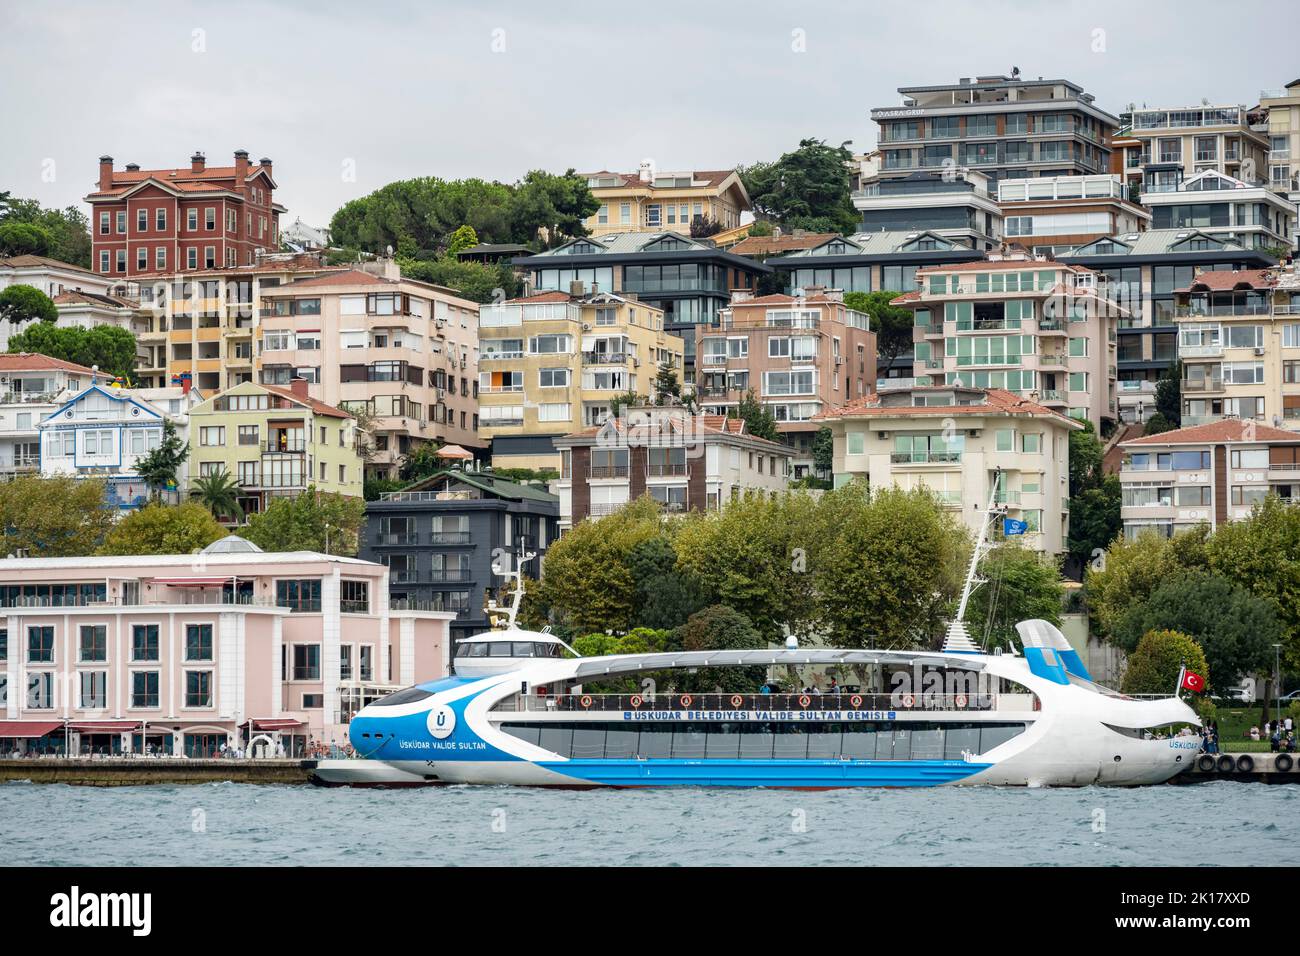 Türkei, Istanbul, Üsküdar, modernes Fährschiff Stock Photo